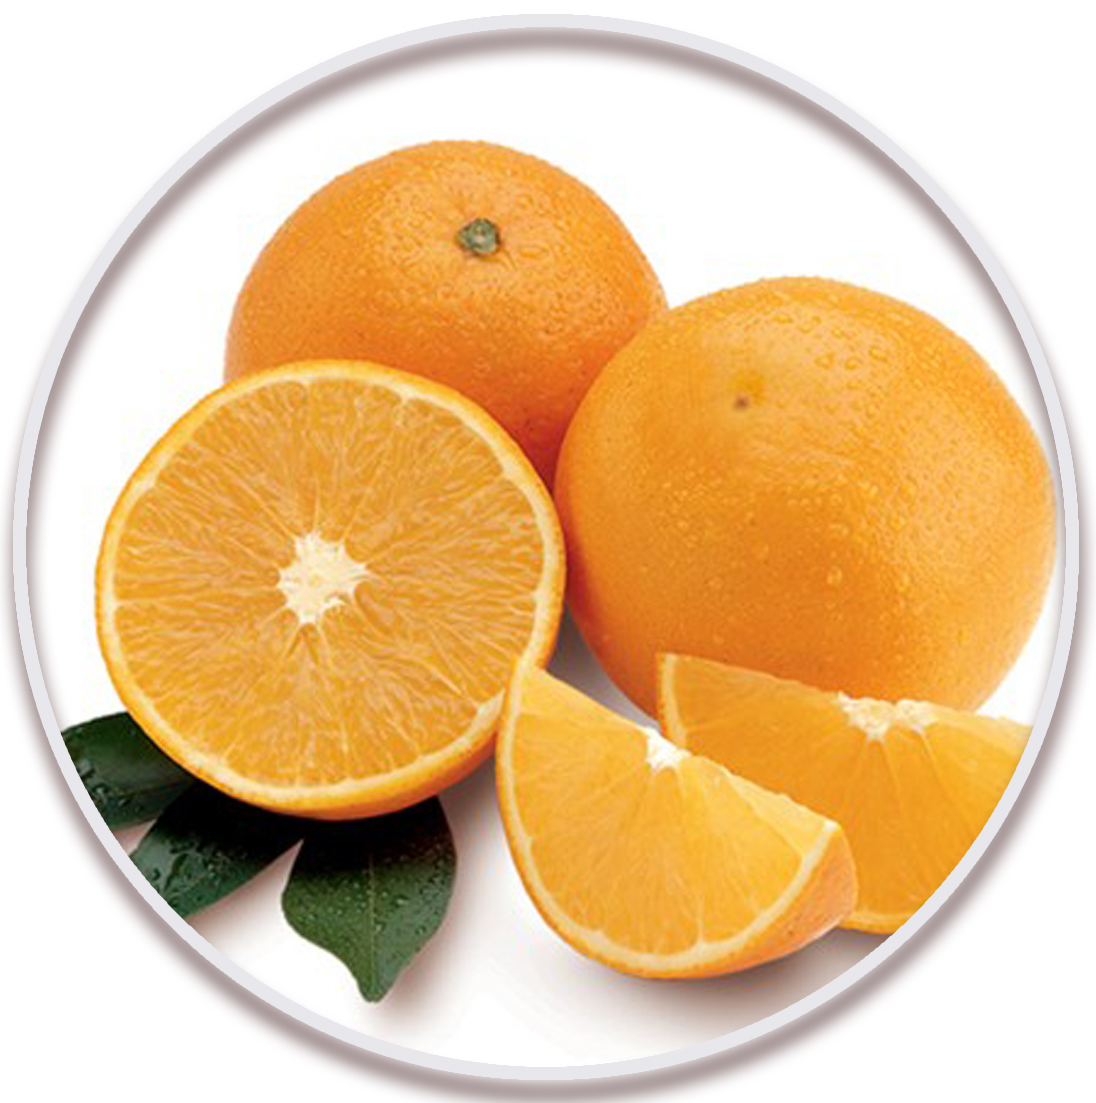 پرتقال والنسیا گوشت سفید (Valencia Orange)